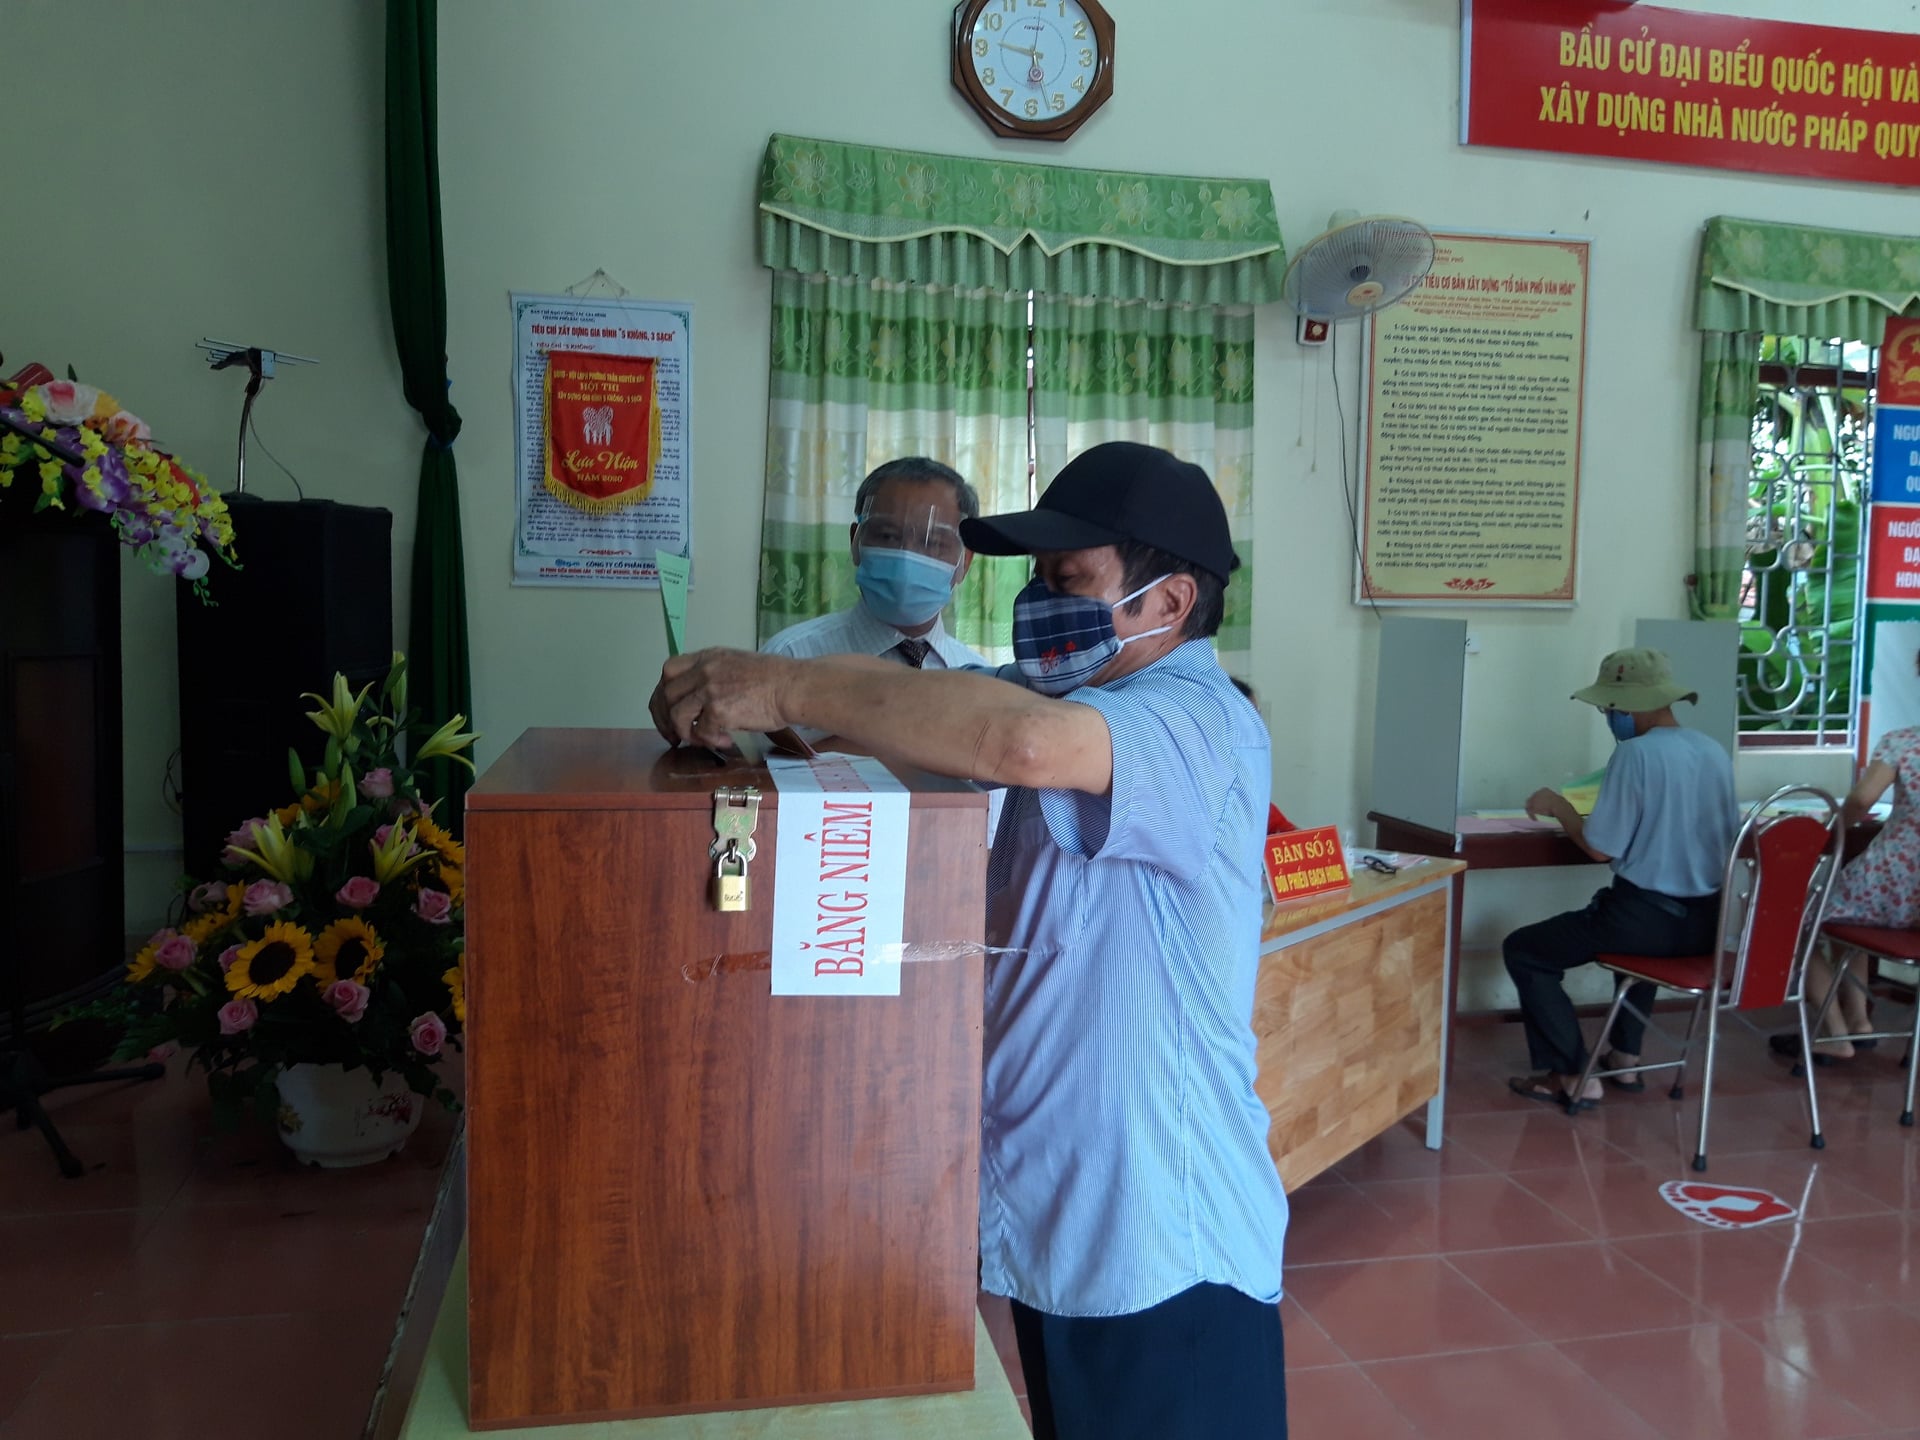 Bầu cử tại tâm dịch Bắc Giang: Hòm phiếu được chở bằng xe đạp đến từng nhà cử tri  - Ảnh 7.